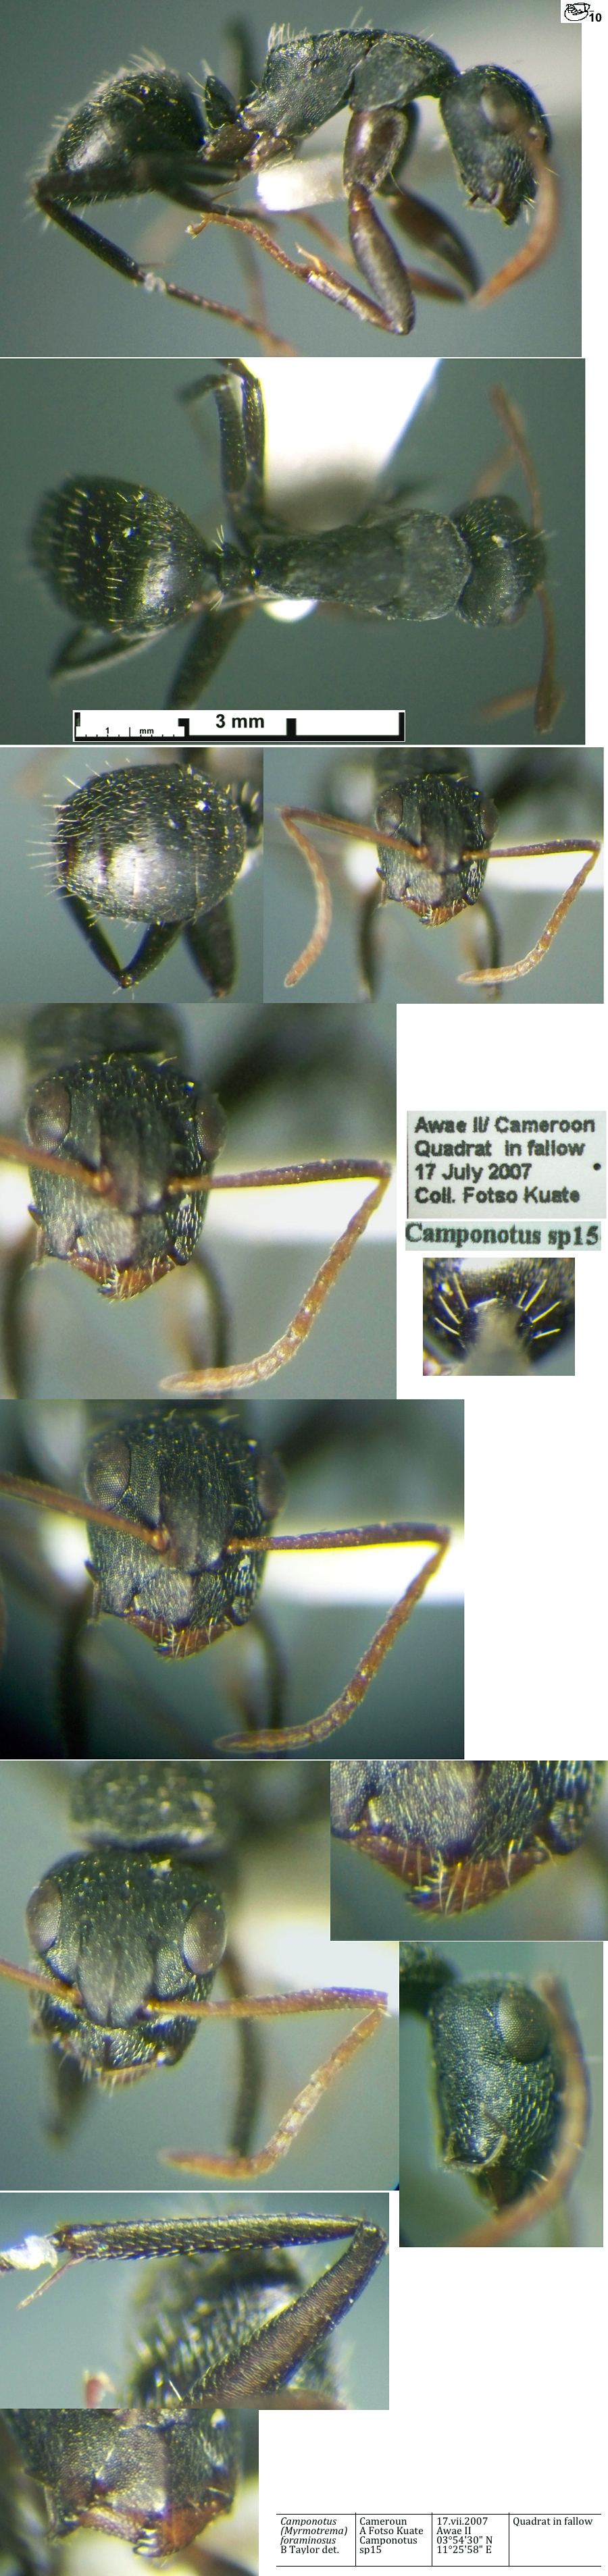 {Camponotus foraminosus minor}